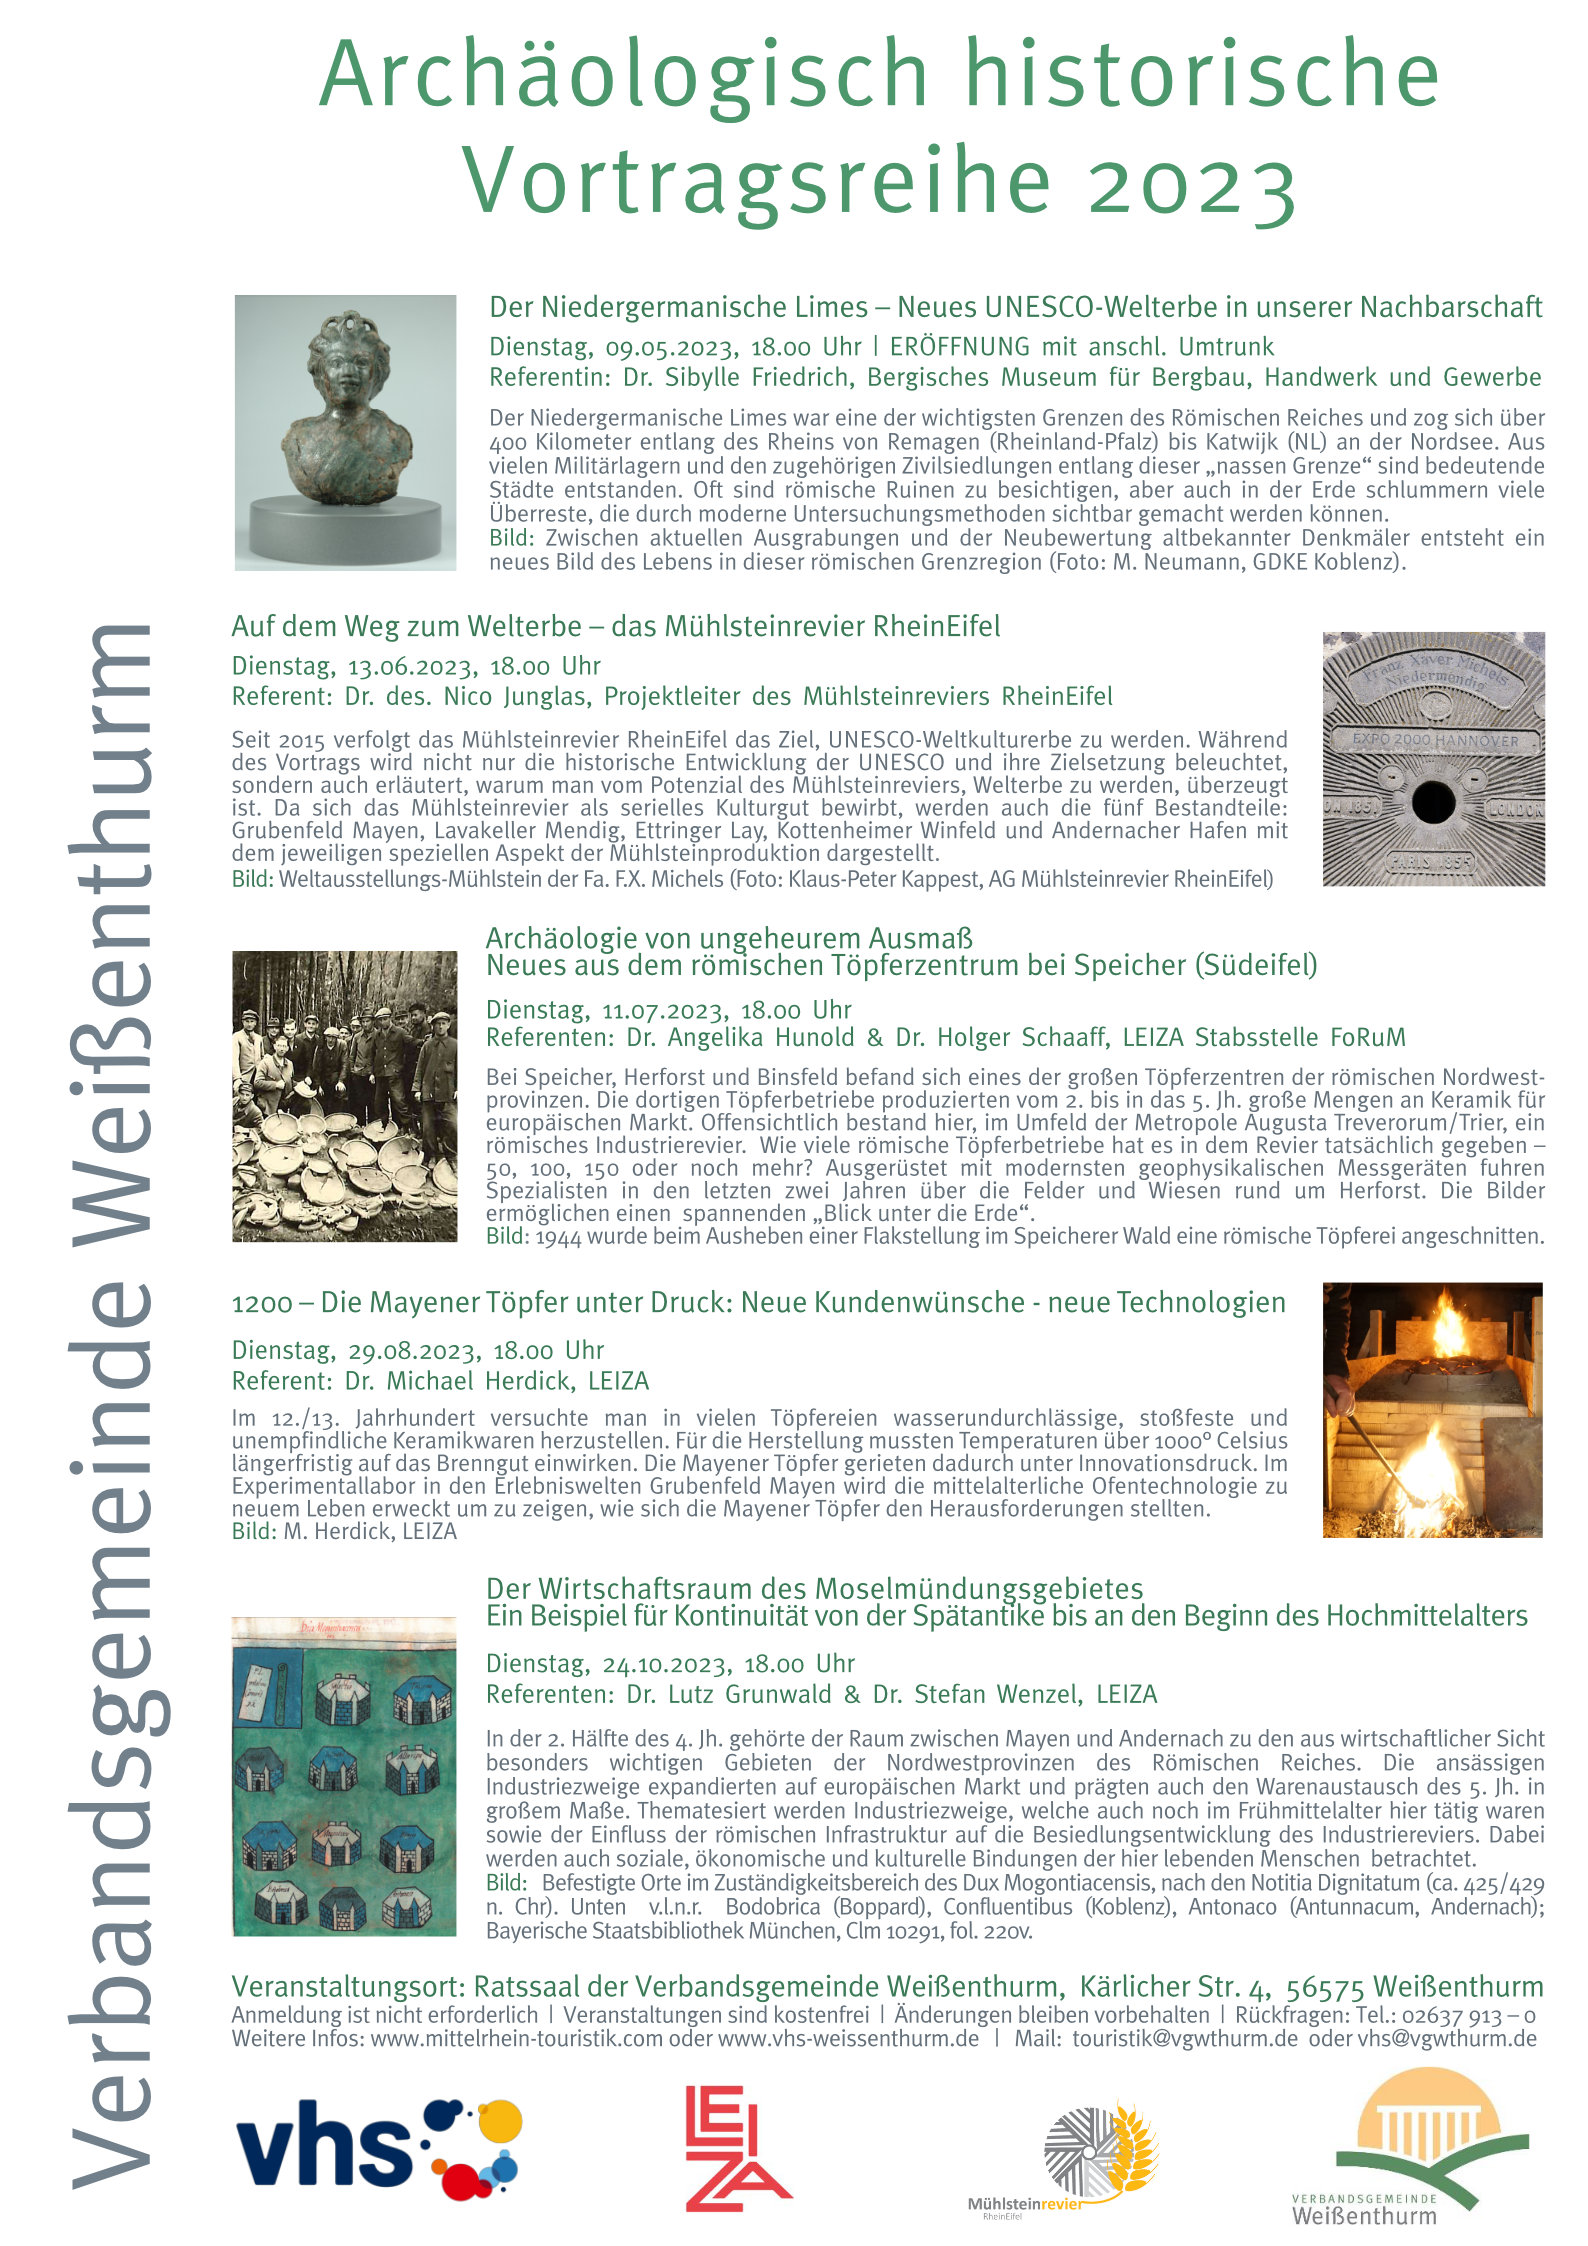 Archäologisch-historische Vortragsreihe in der Verbandsgemeinde Weißenthurm